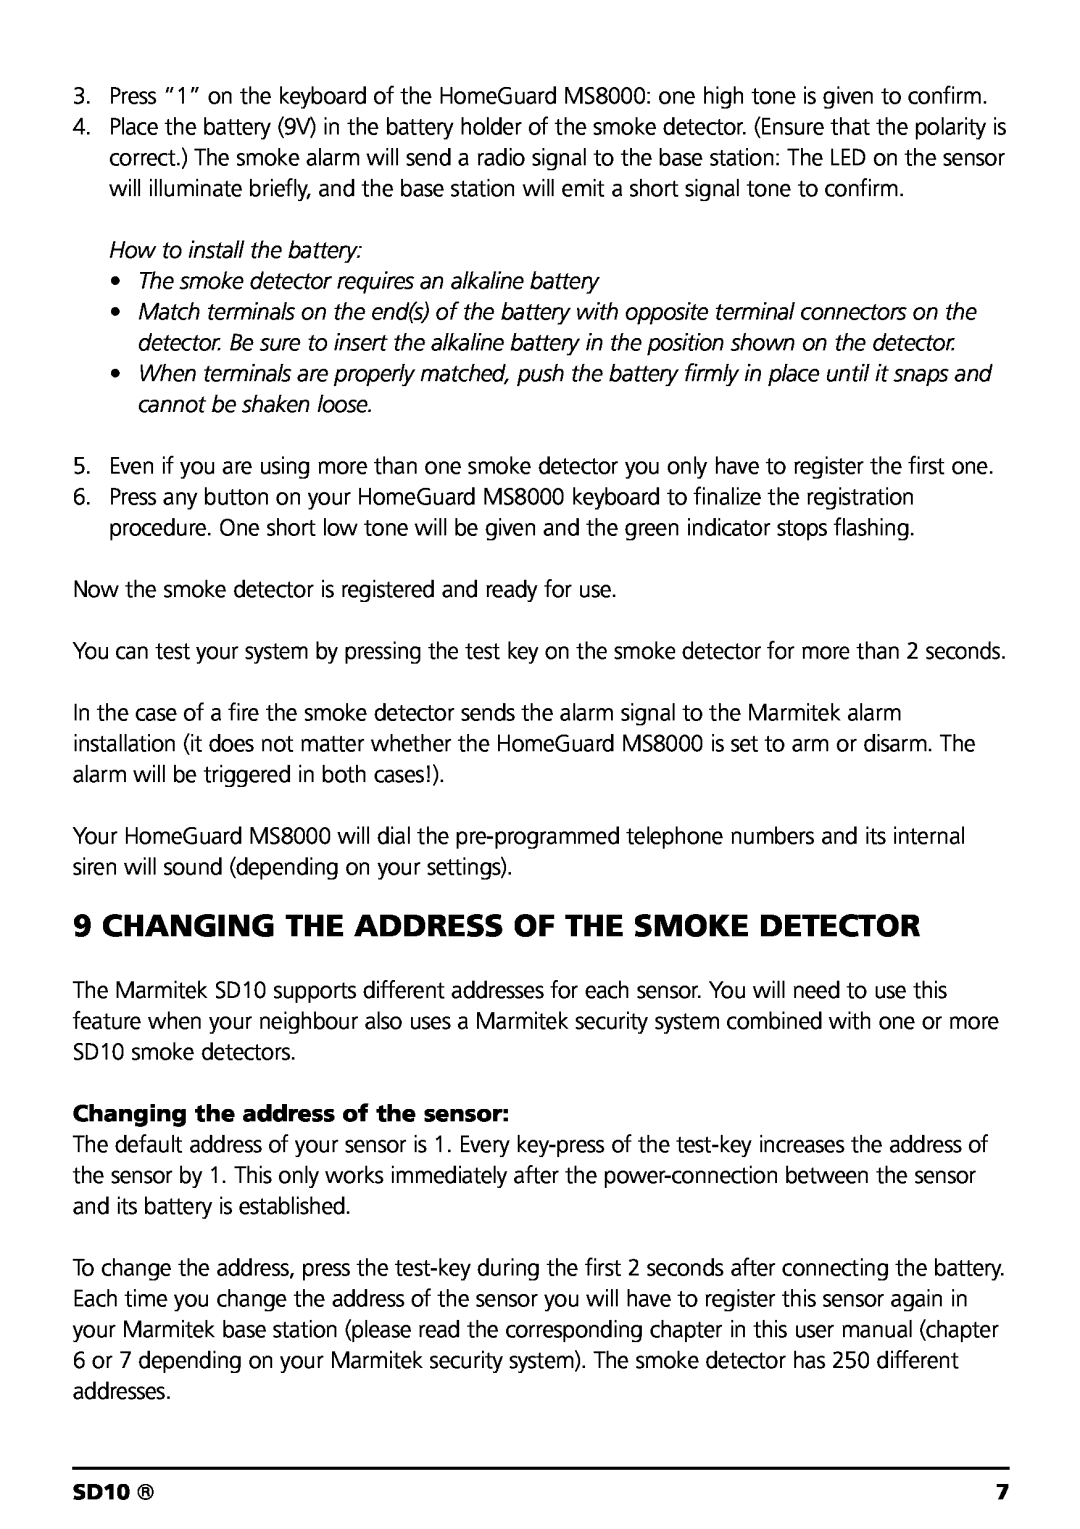 Marmitek SD10 owner manual Changing The Address Of The Smoke Detector, Changing the address of the sensor 